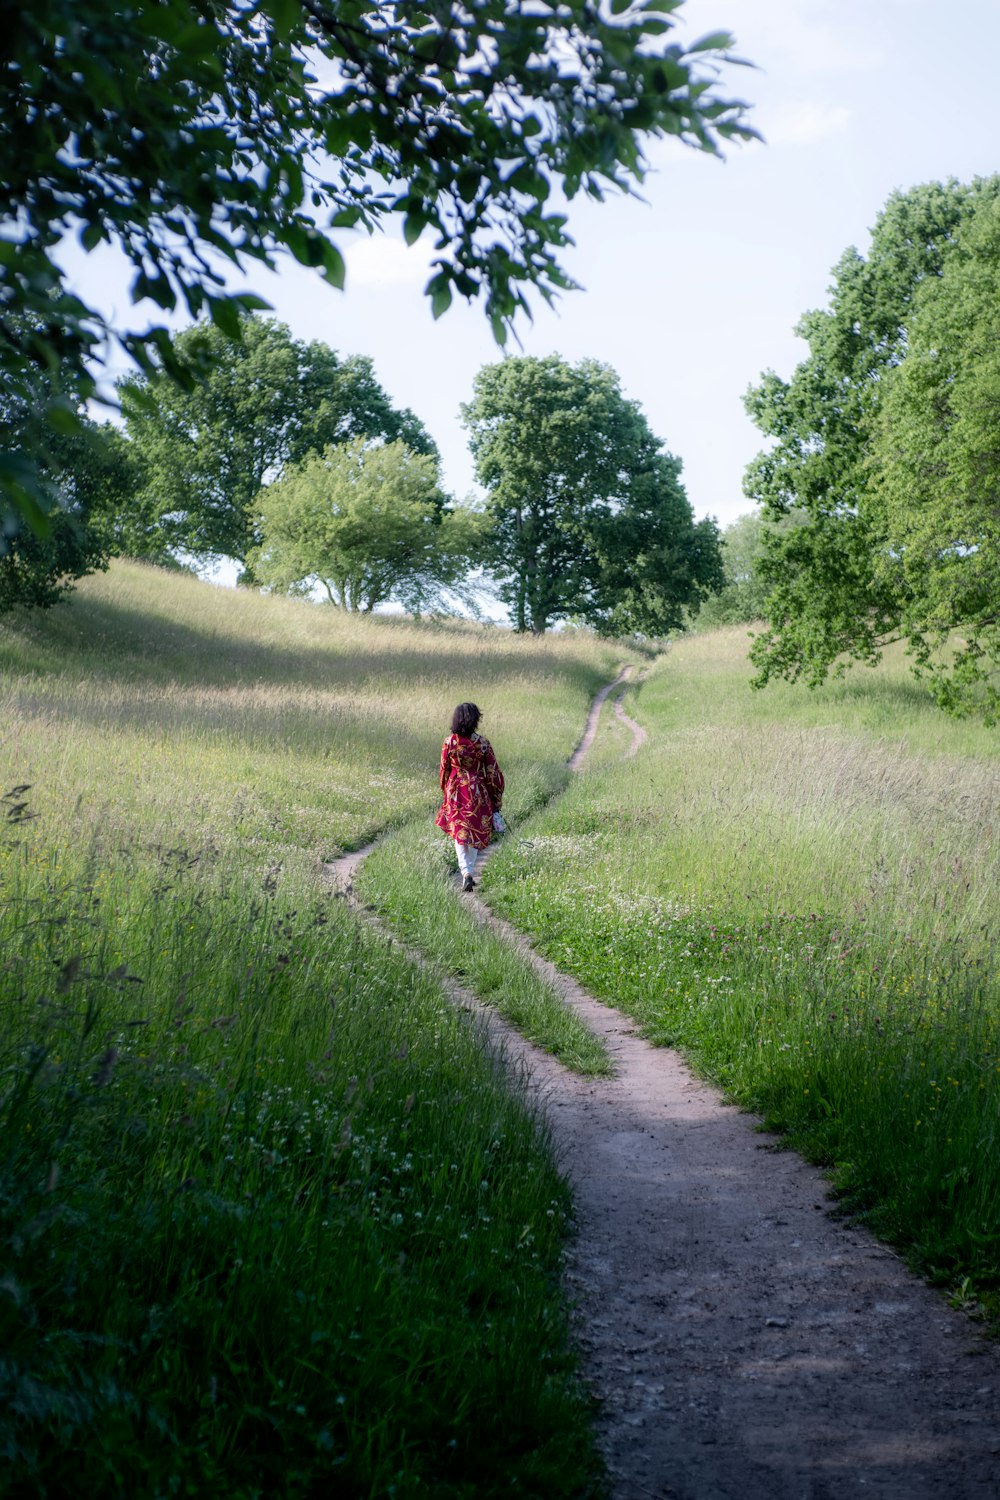 a woman walking down a dirt path through a lush green field